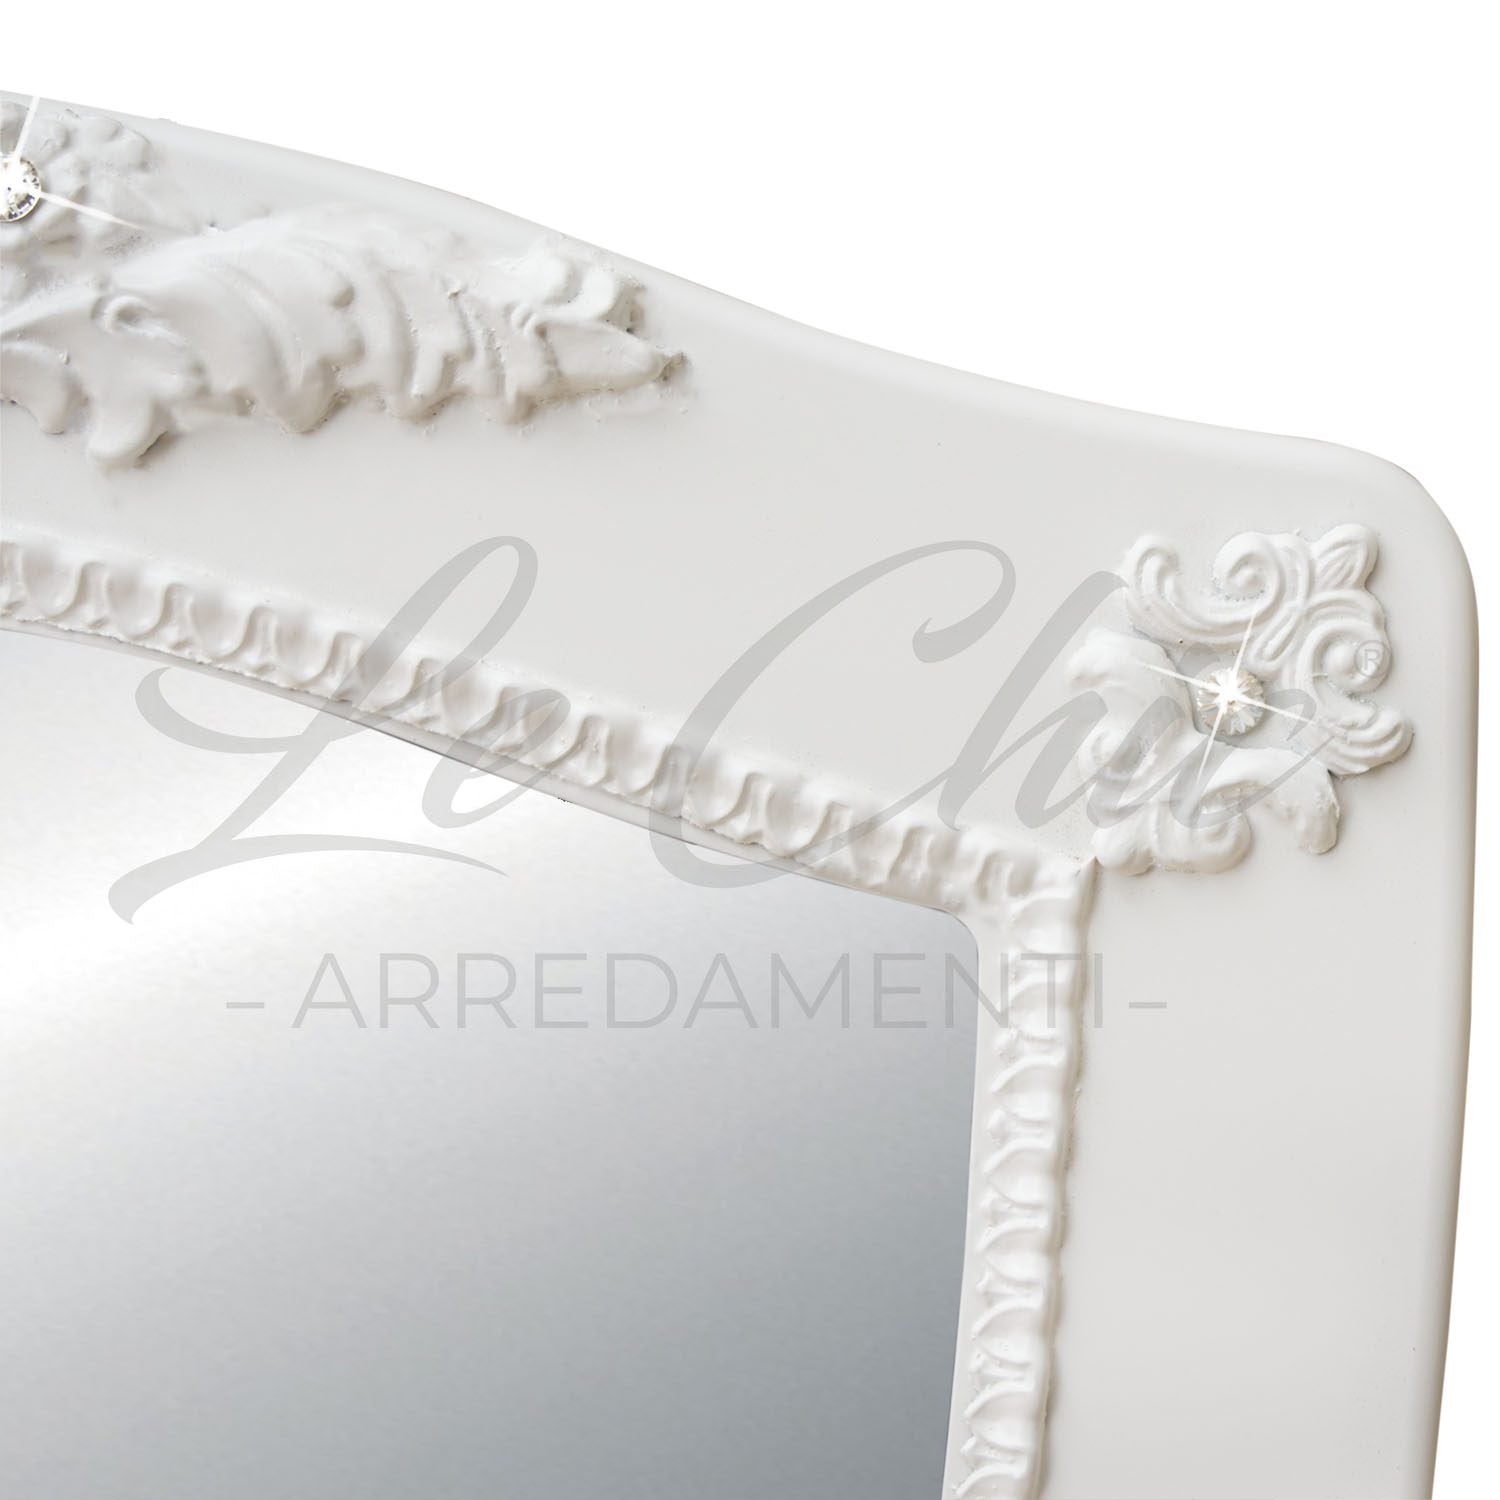 Specchiera Ariel in legno barocco white con decori e brillanti